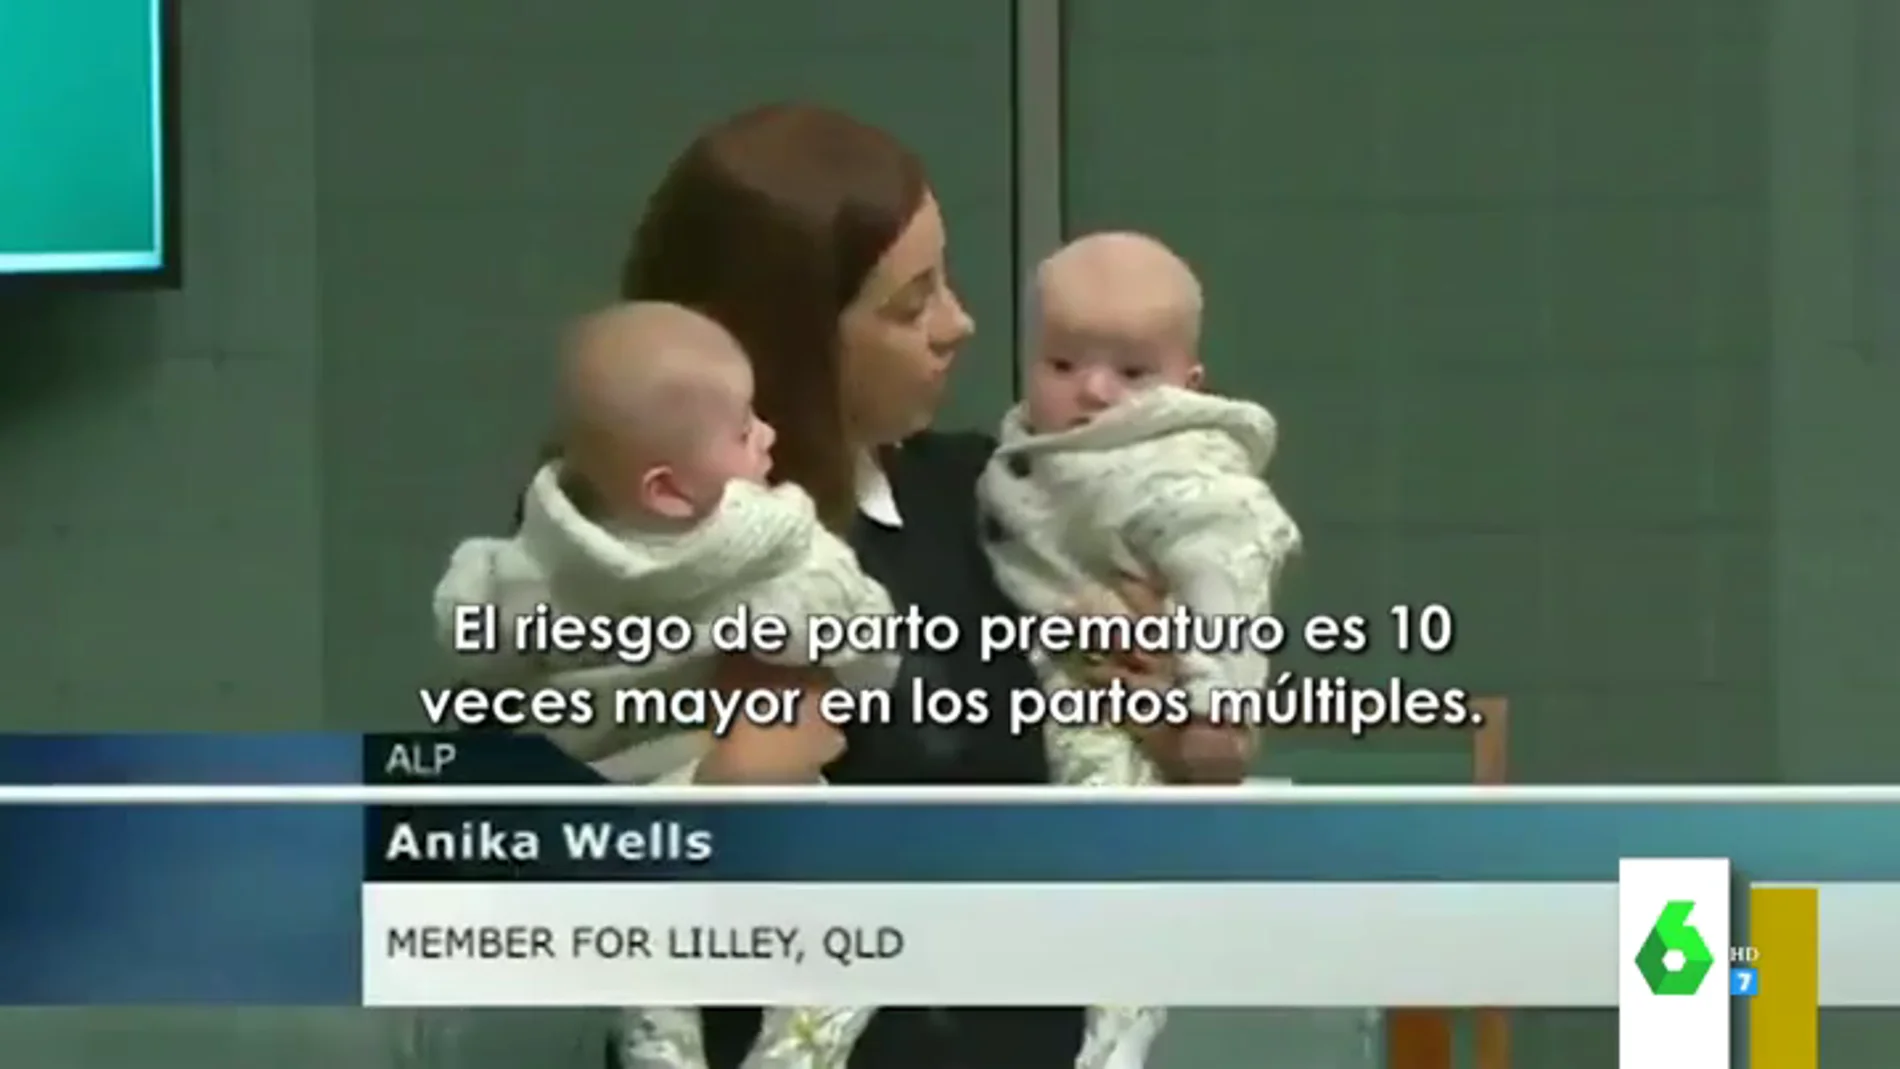 La reivindicación de una política sobre los partos múltiples en el Parlamento con dos bebés en brazos